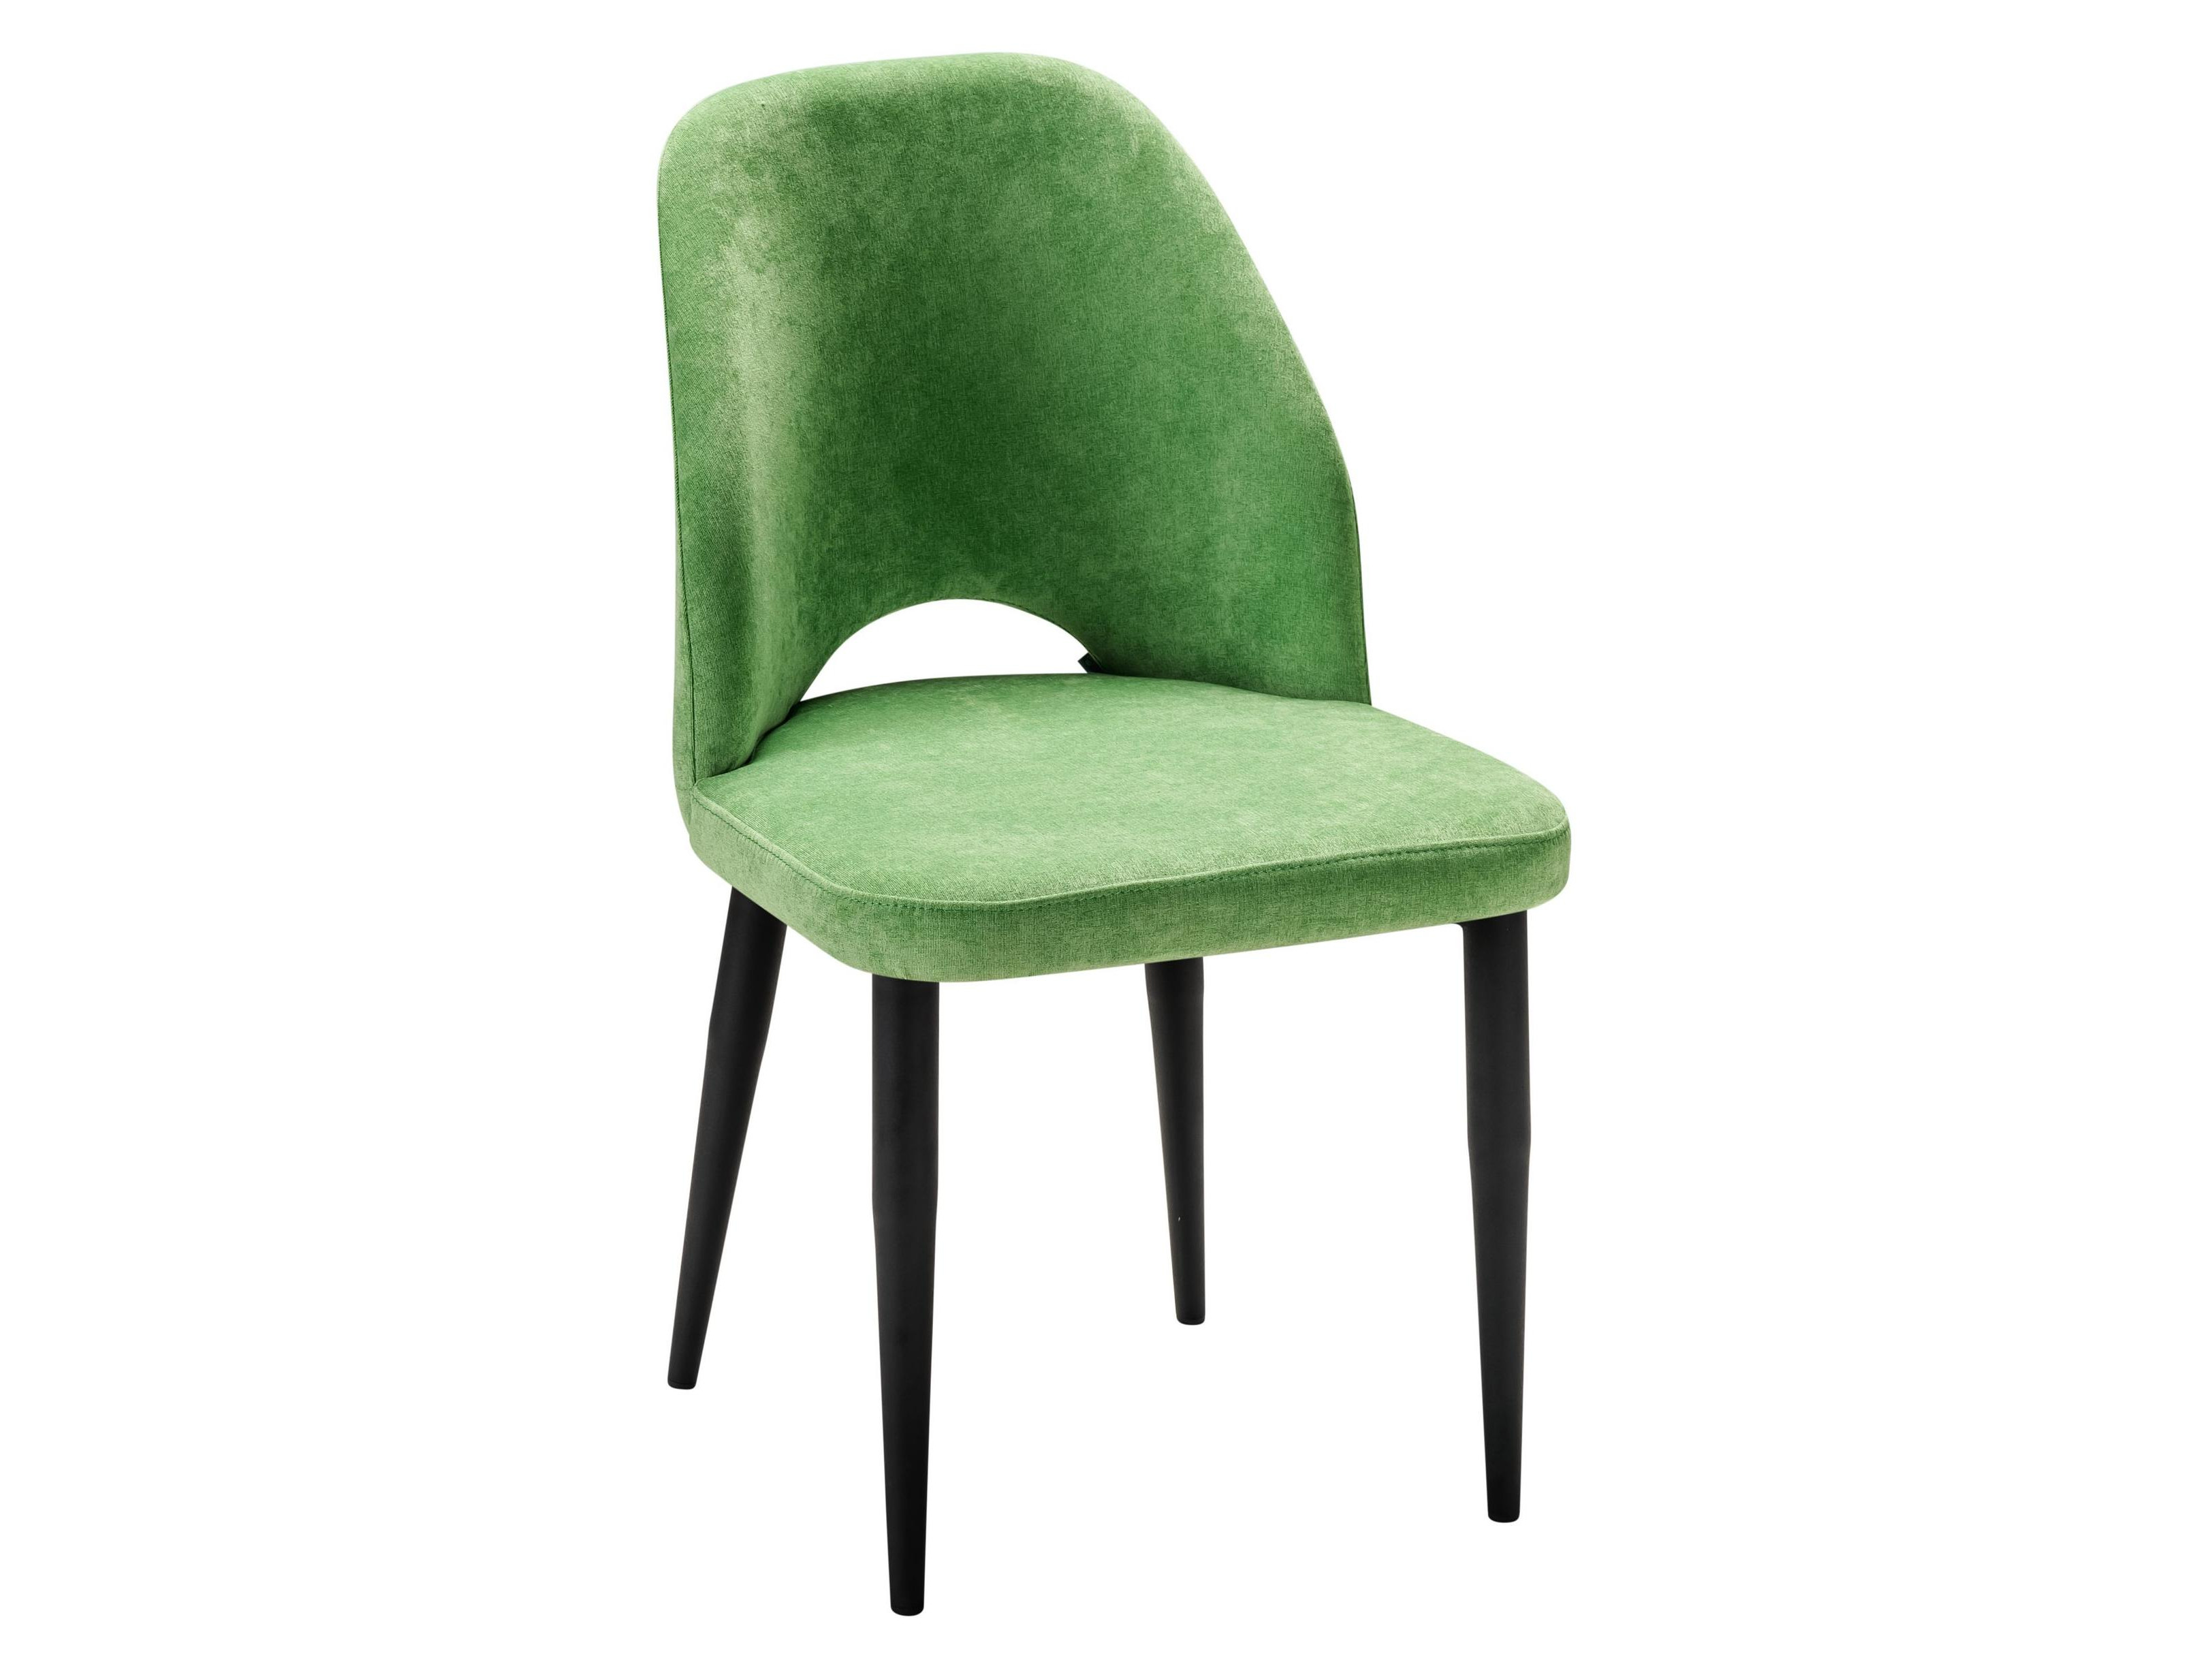 Стул Ledger зеленый/черный Зеленый, Металл стул ledger фист эко чёрн зеленый металл